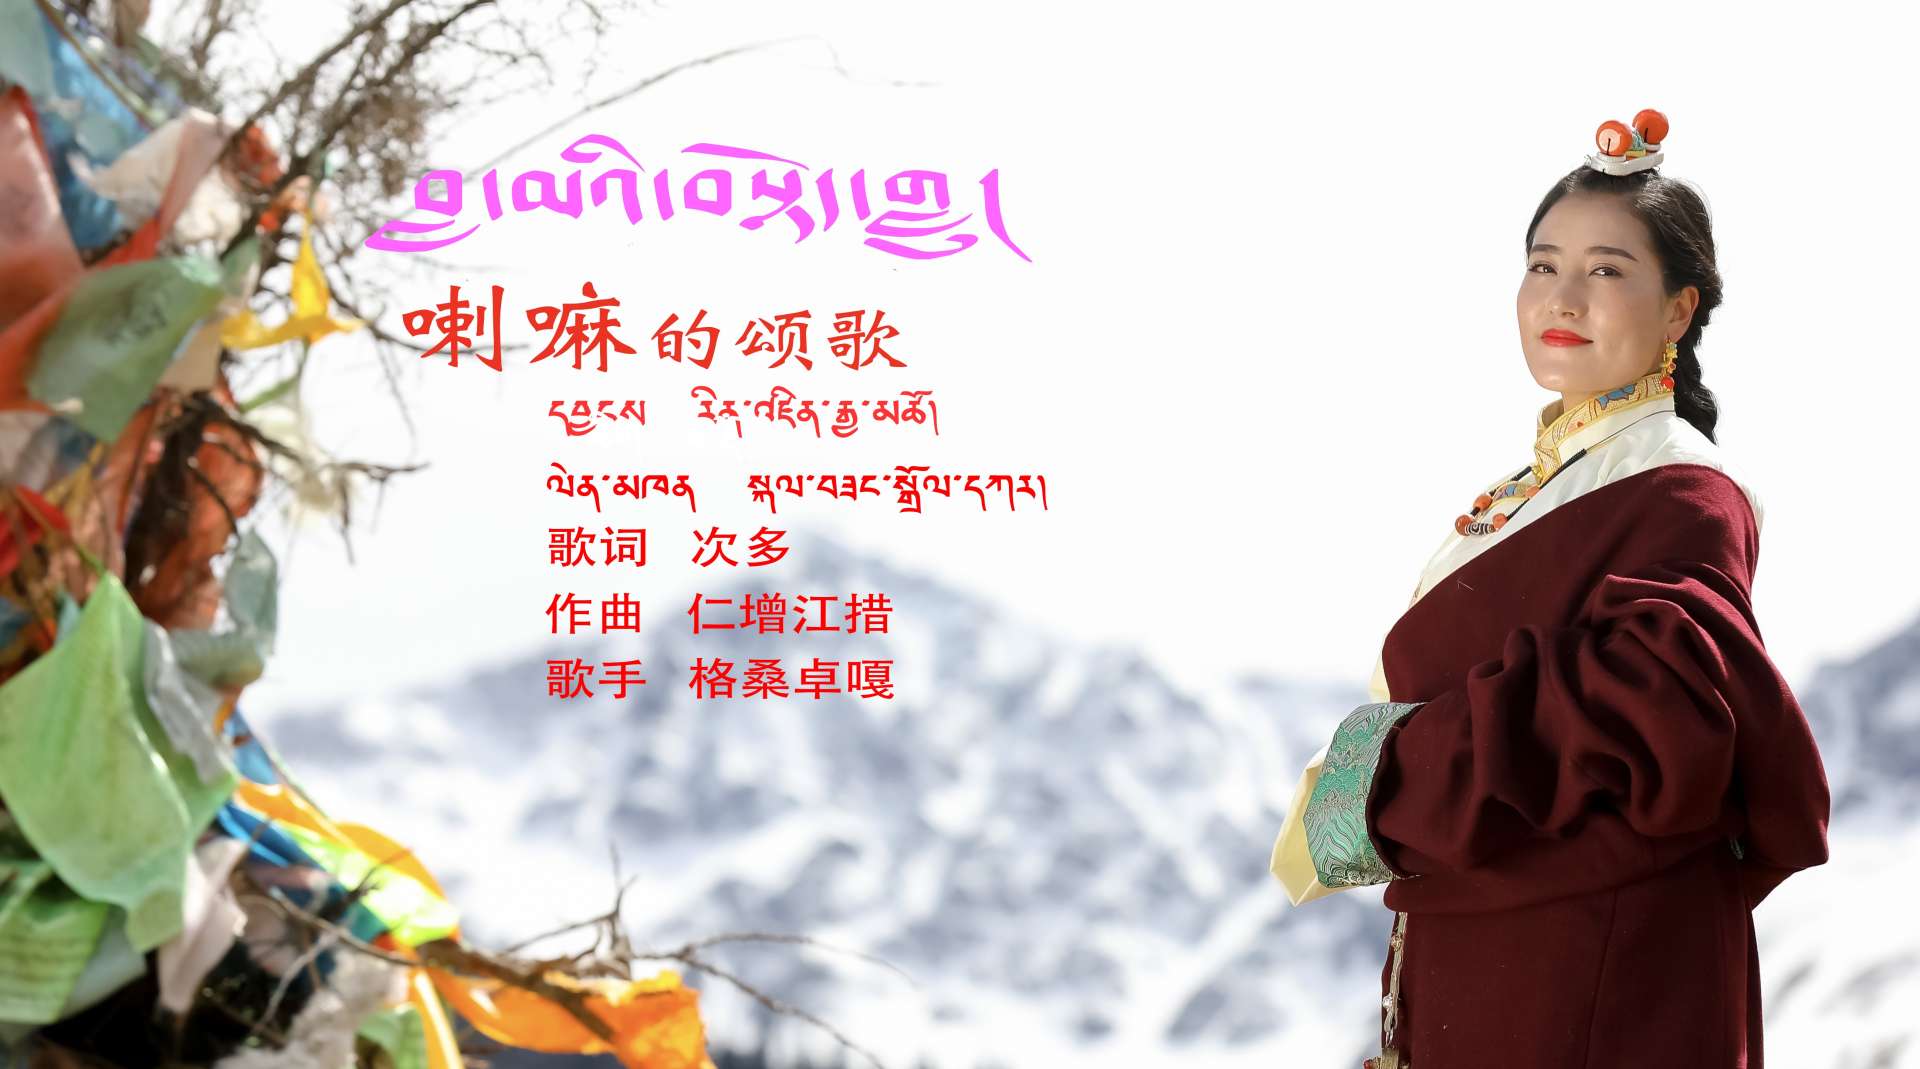 2020年藏族歌手格桑卓嘎新歌曲喇嘛的颂歌